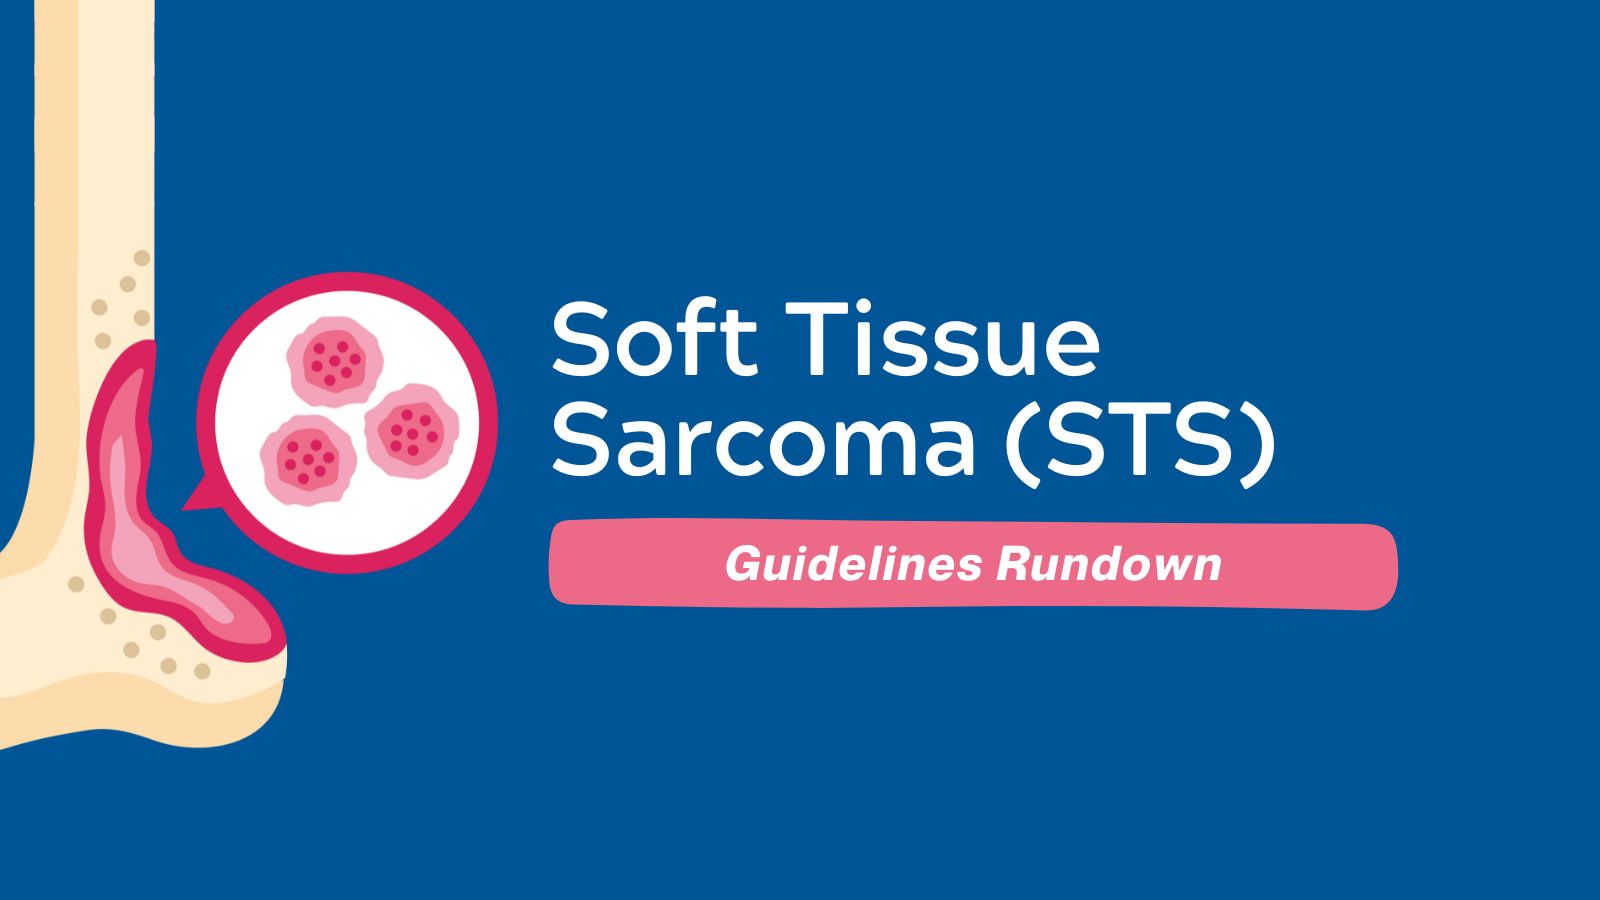 Guidelines Rundown - Soft Tissue Sarcoma (STS)